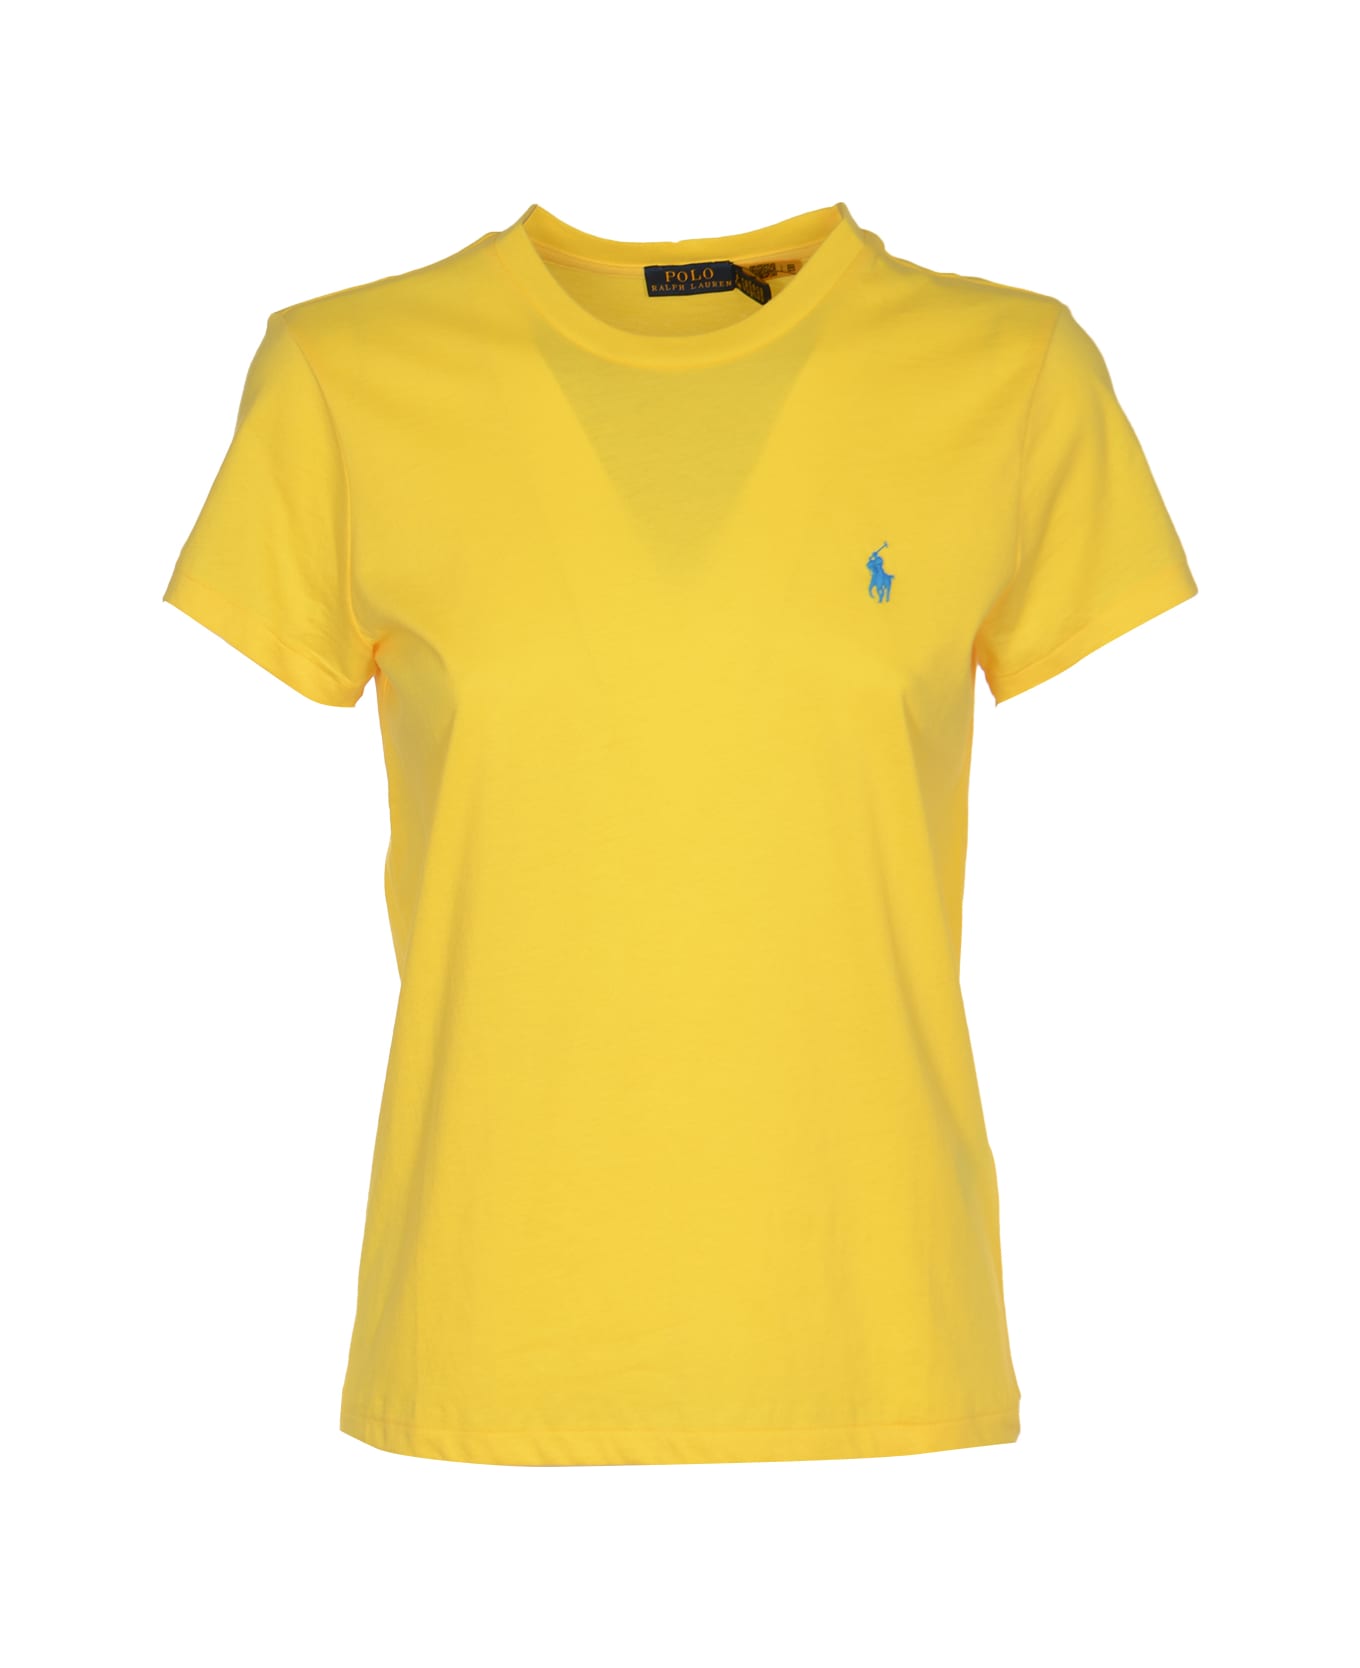 Polo Ralph Lauren Logo Embroidered Regular T-shirt - Yellow Tシャツ